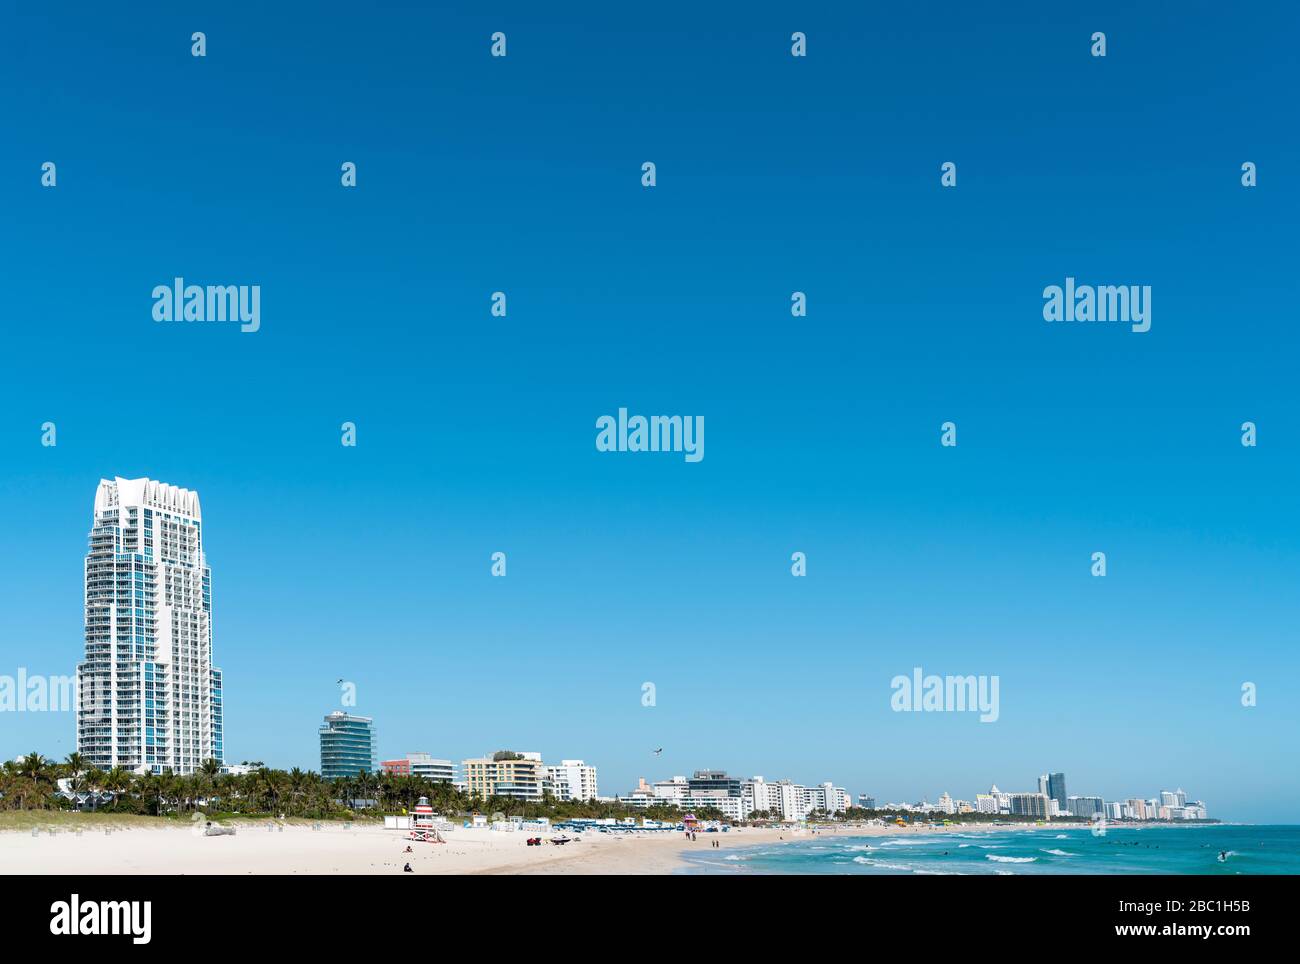 Miami Beach, Florida, USA Stock Photo